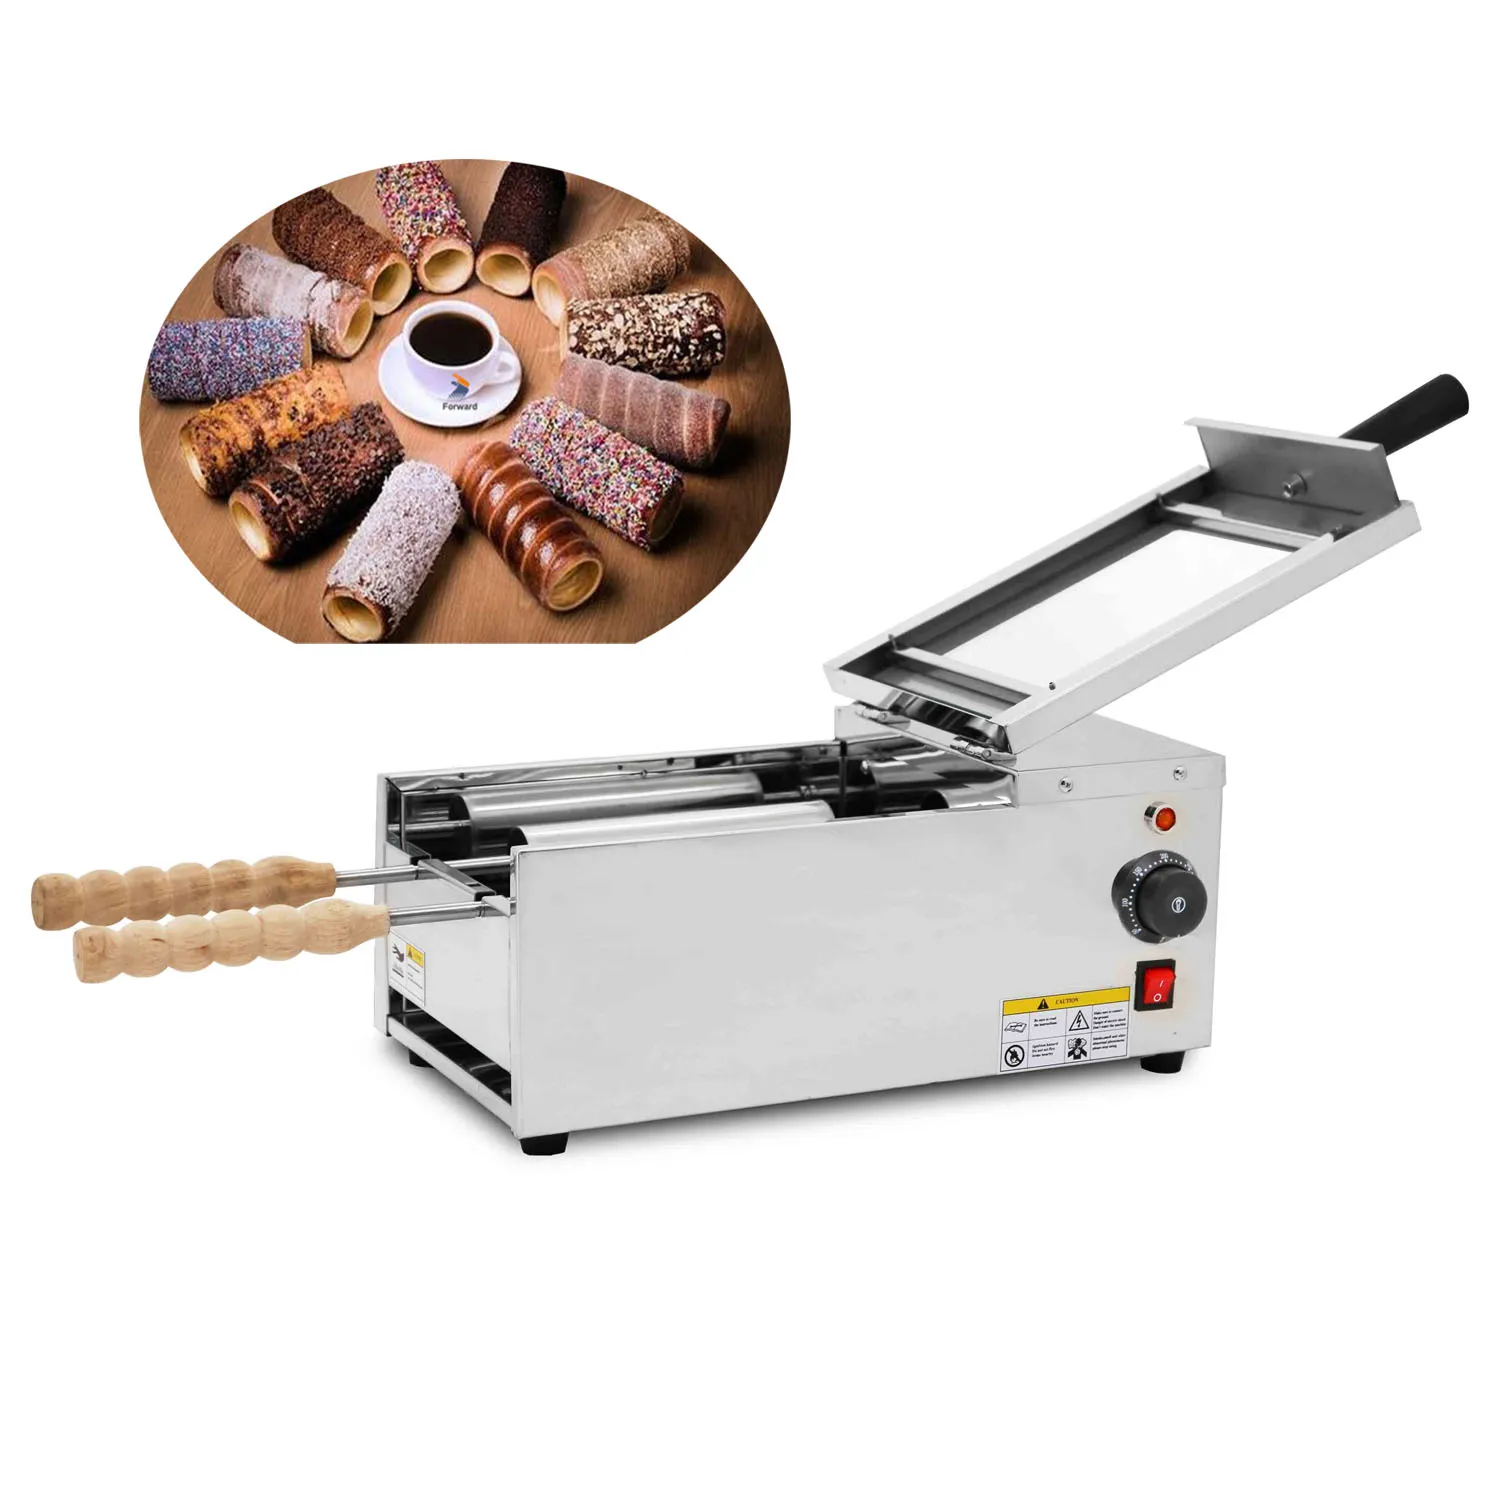 مع 2 أسطوانة كهربائية صانع كعكة المداخن الهنغارية Kurtos Kalacs Suto Roll Grill Oven Maker Maker Bread Roll Machine